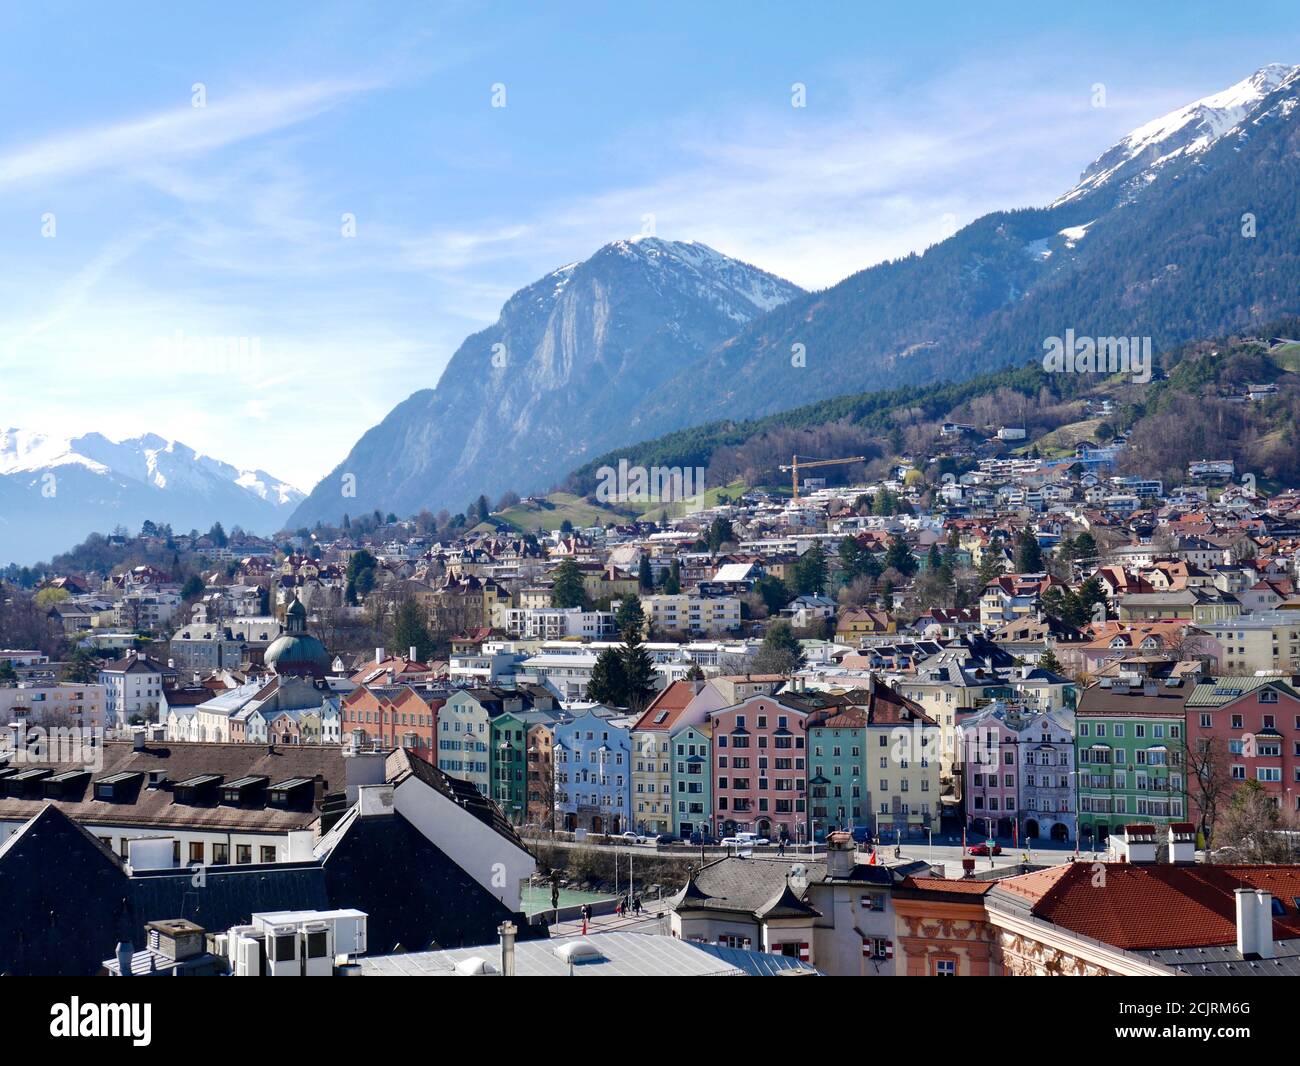 Schöne farbige Häuser en Innsbruck un dem Inn. Aufgenommen aus der Vogelperspektive. Foto de stock